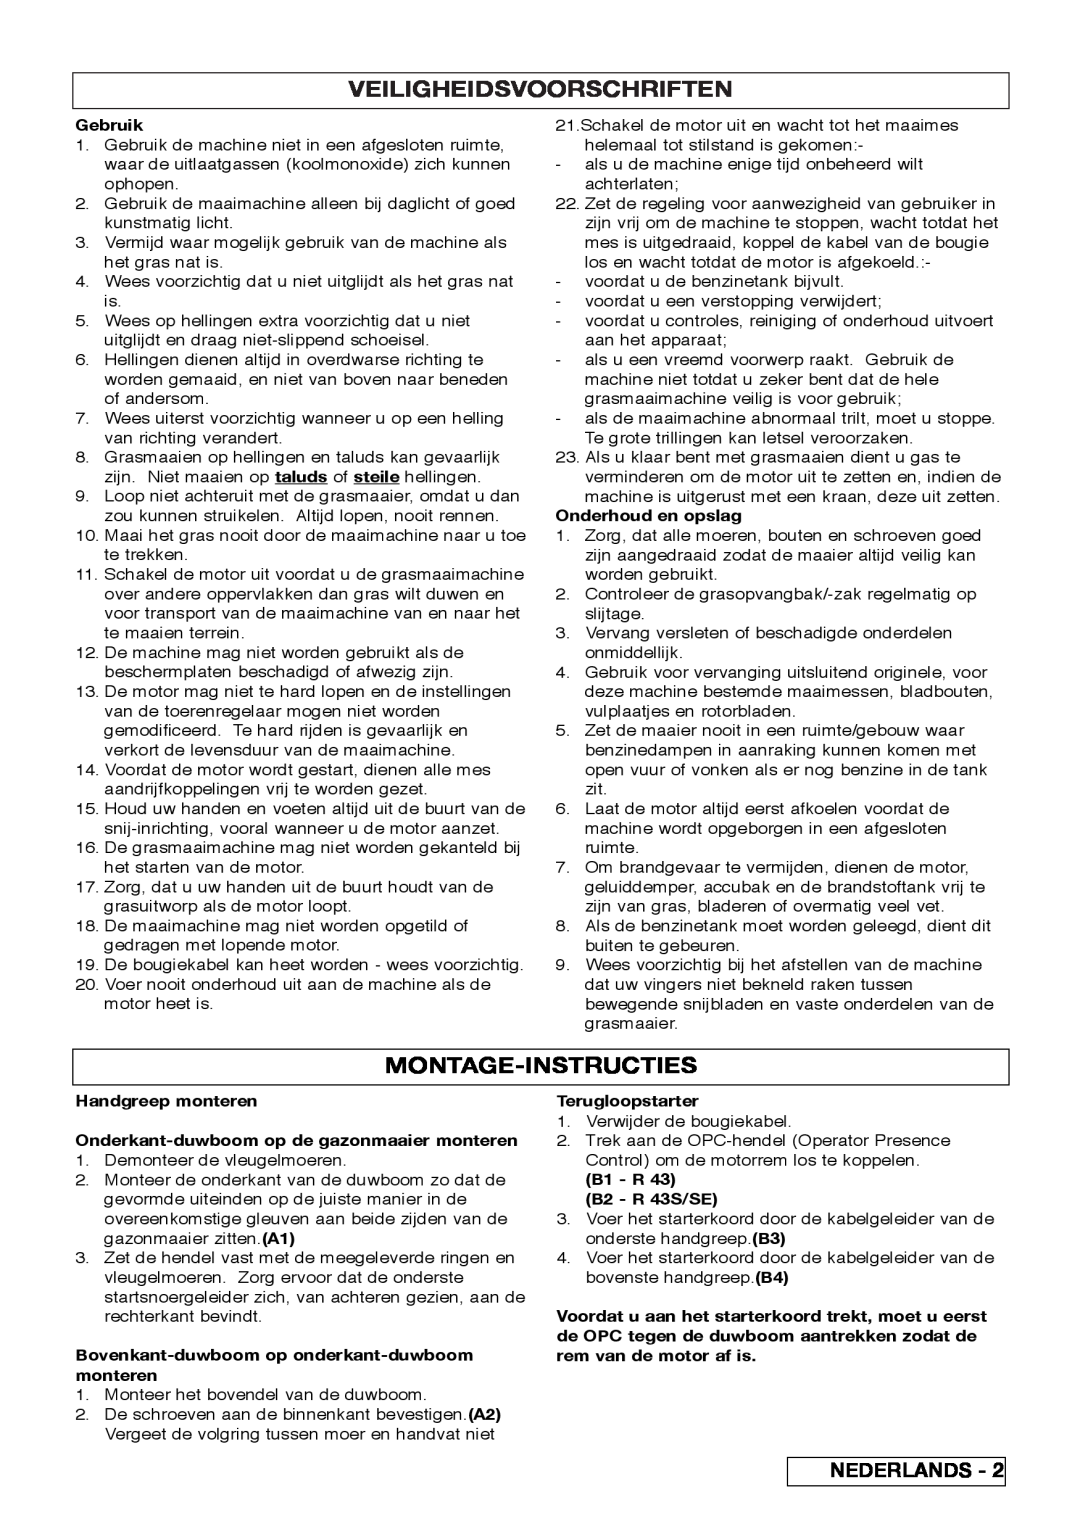 Husqvarna R 43SE manual Veiligheidsvoorschriften, Montage-Instructies 